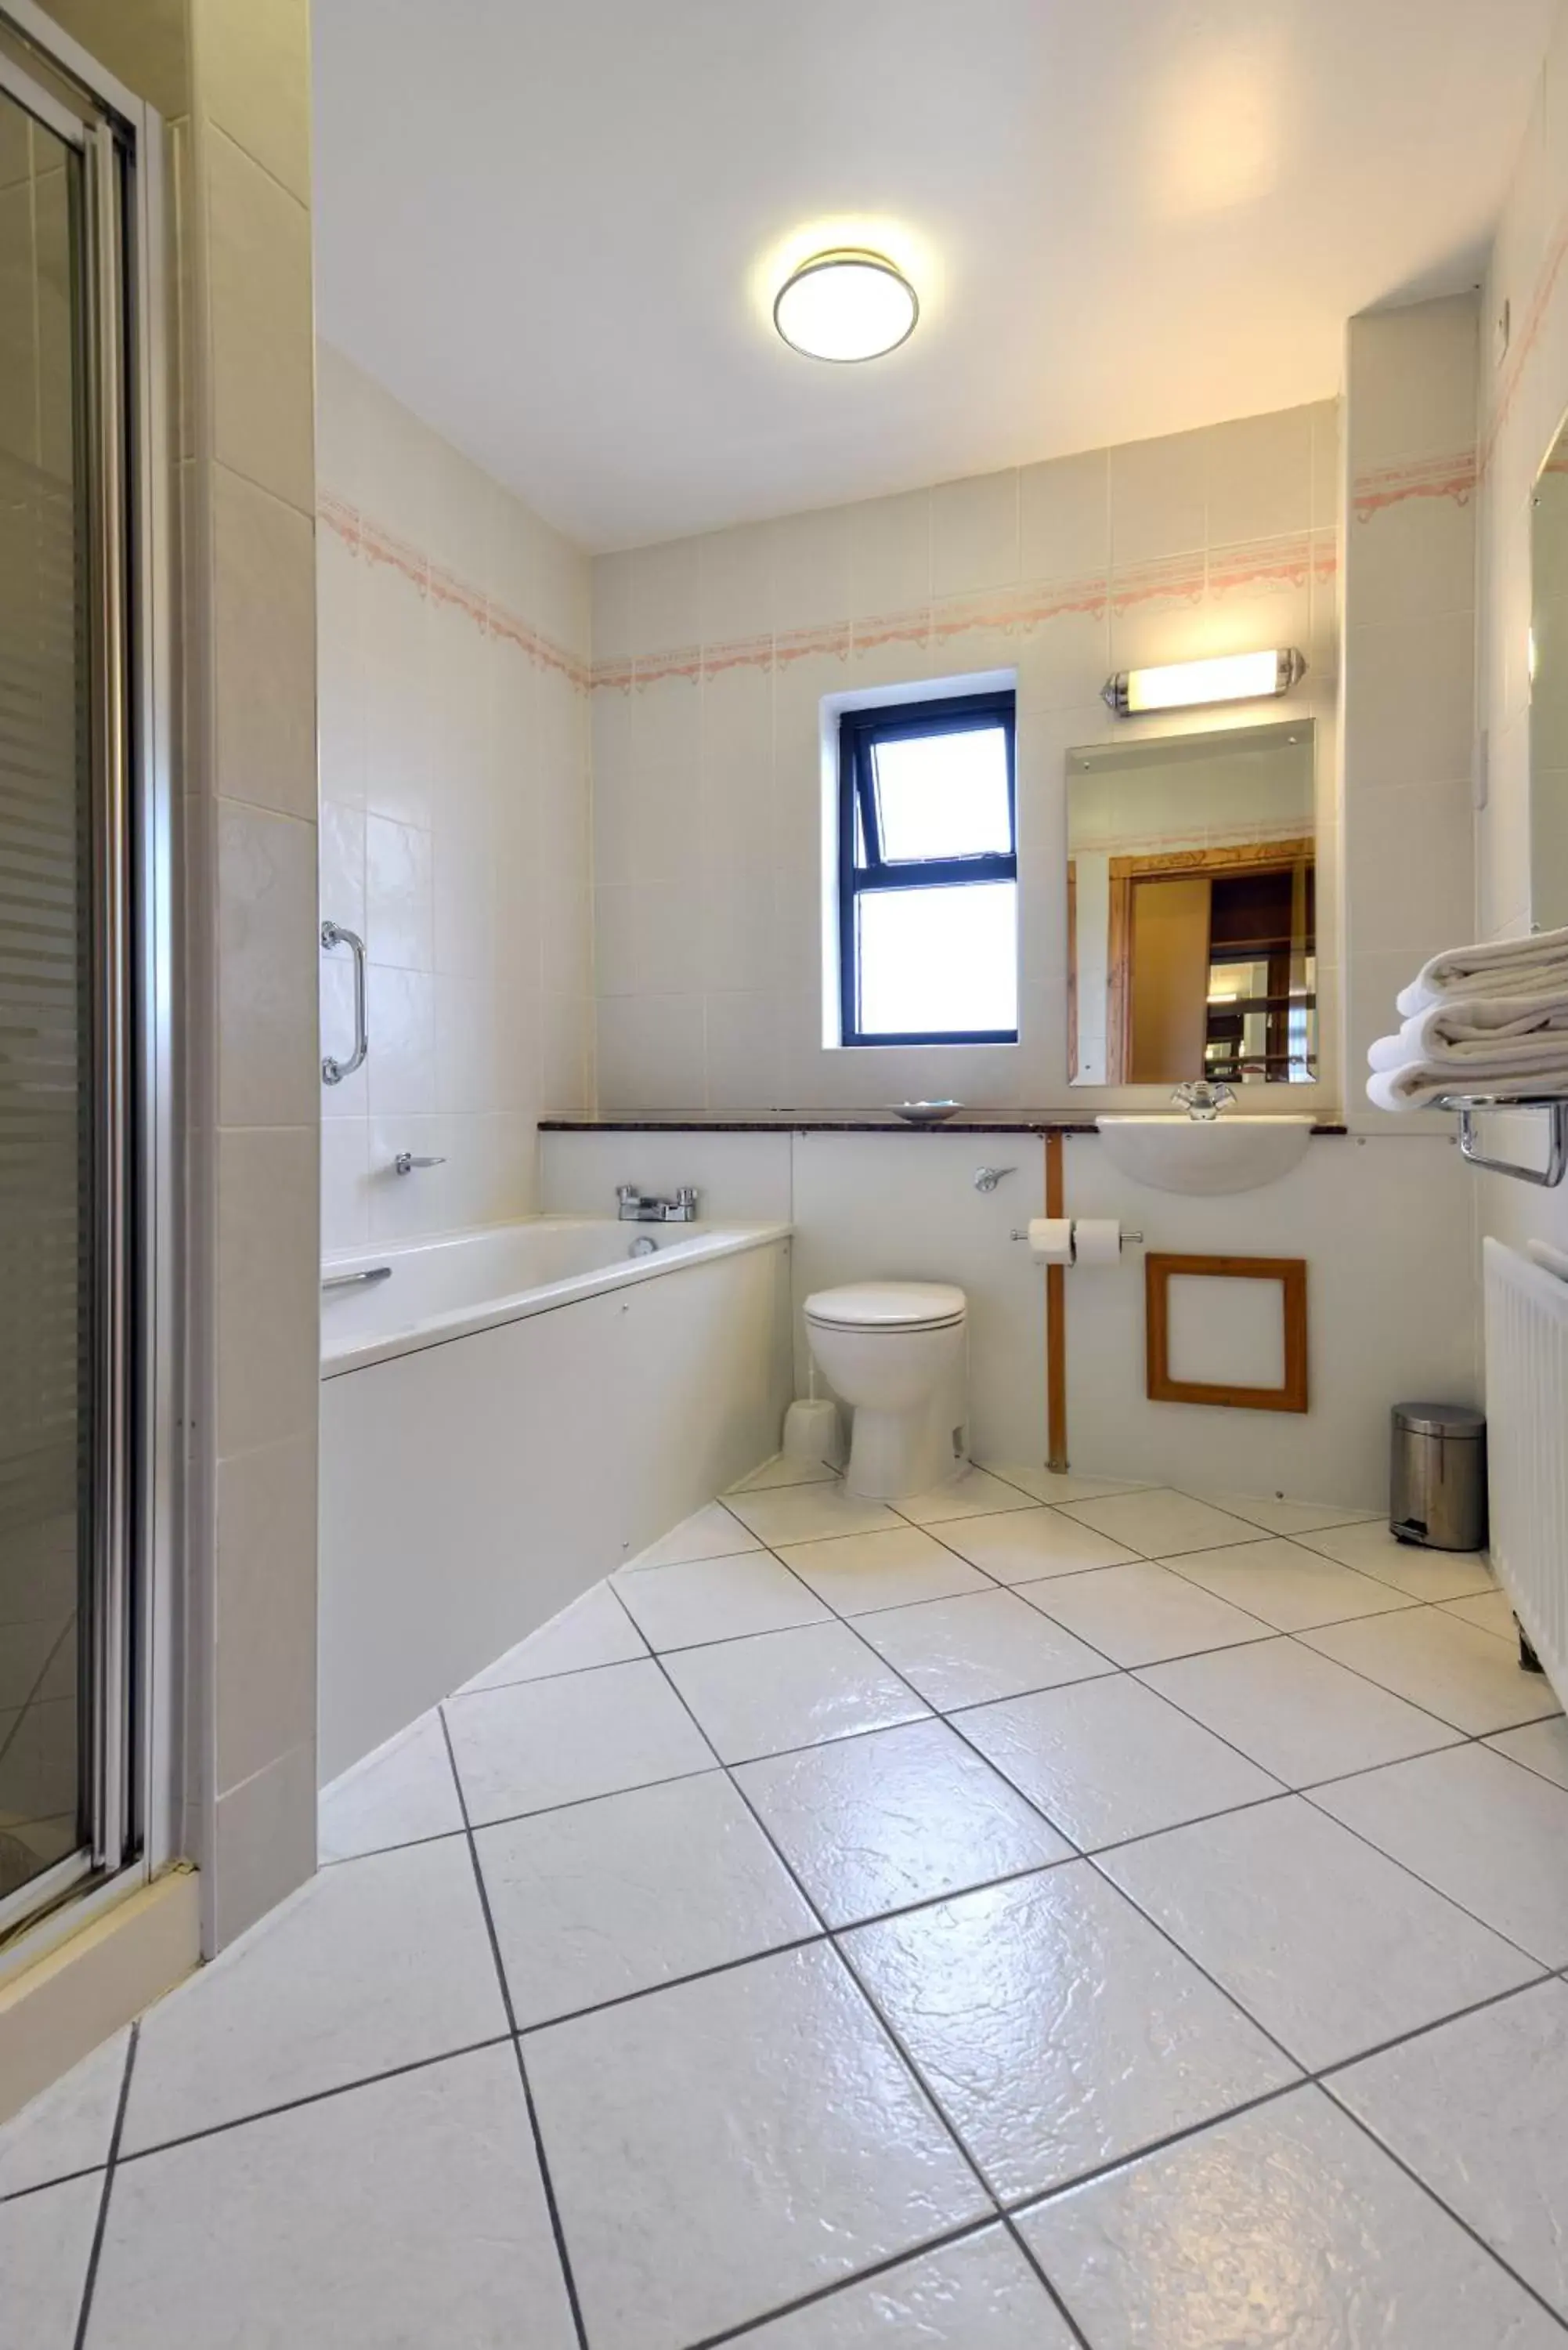 Bathroom, Kitchen/Kitchenette in Cromore Halt